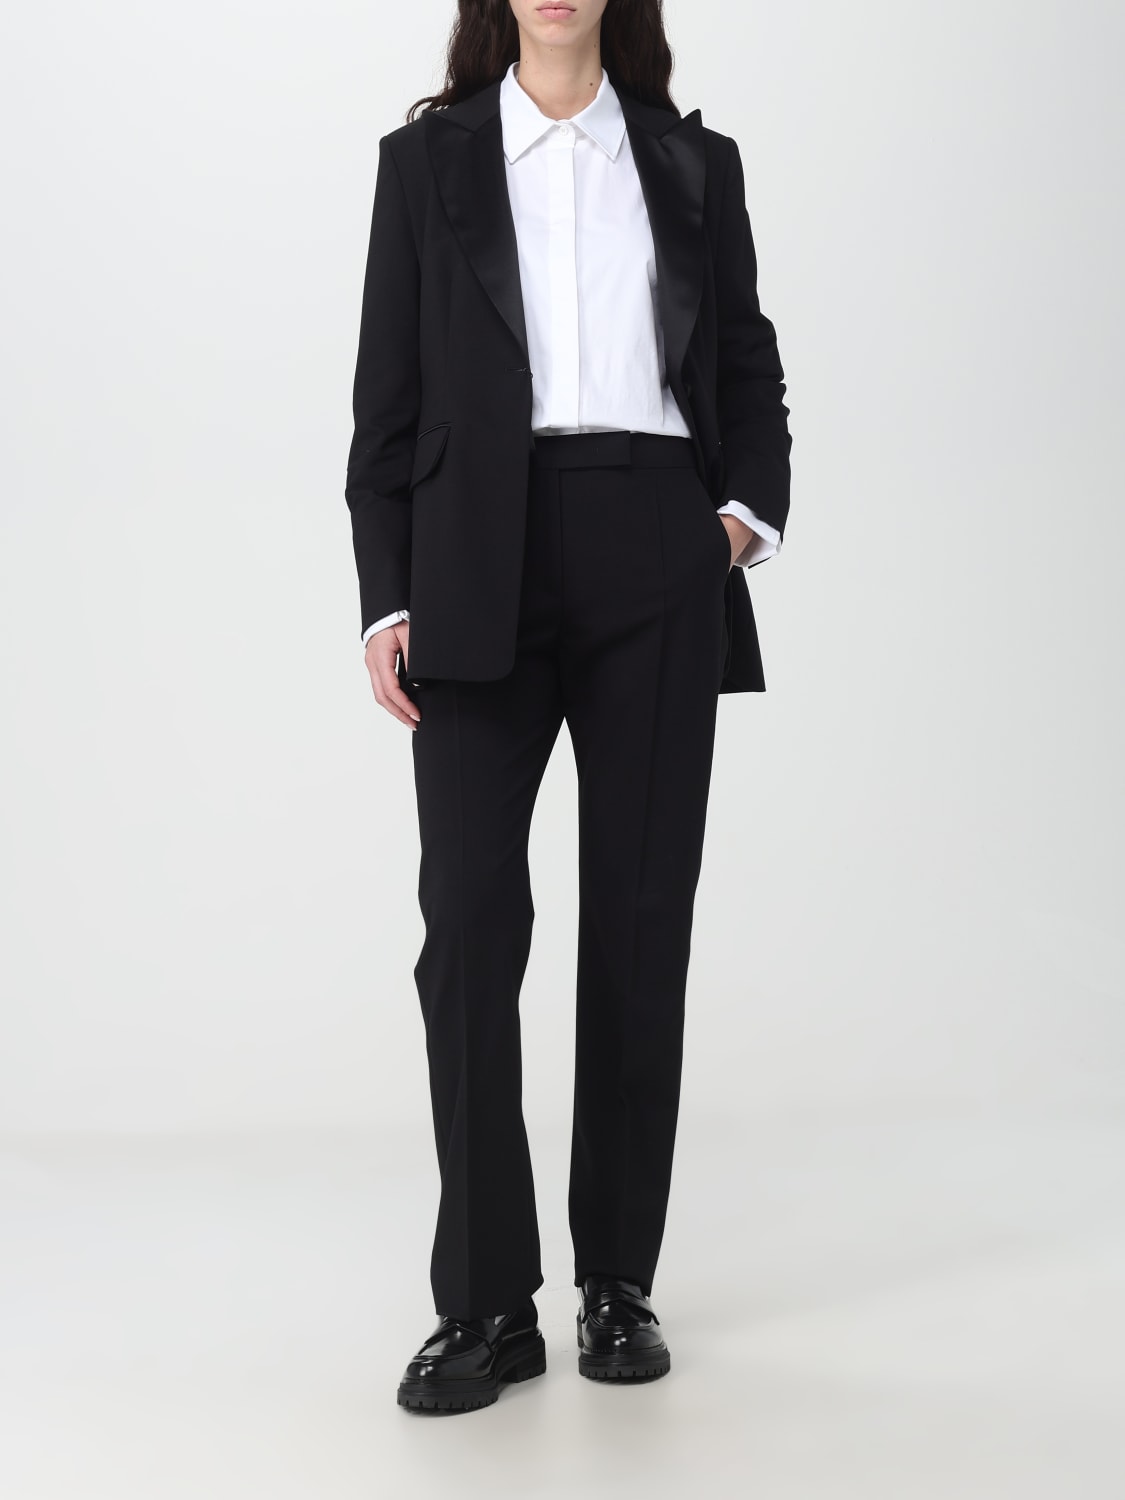 Max Mara Womens Two Button Notch Lapel Slim Fit Blazer Pants Suit